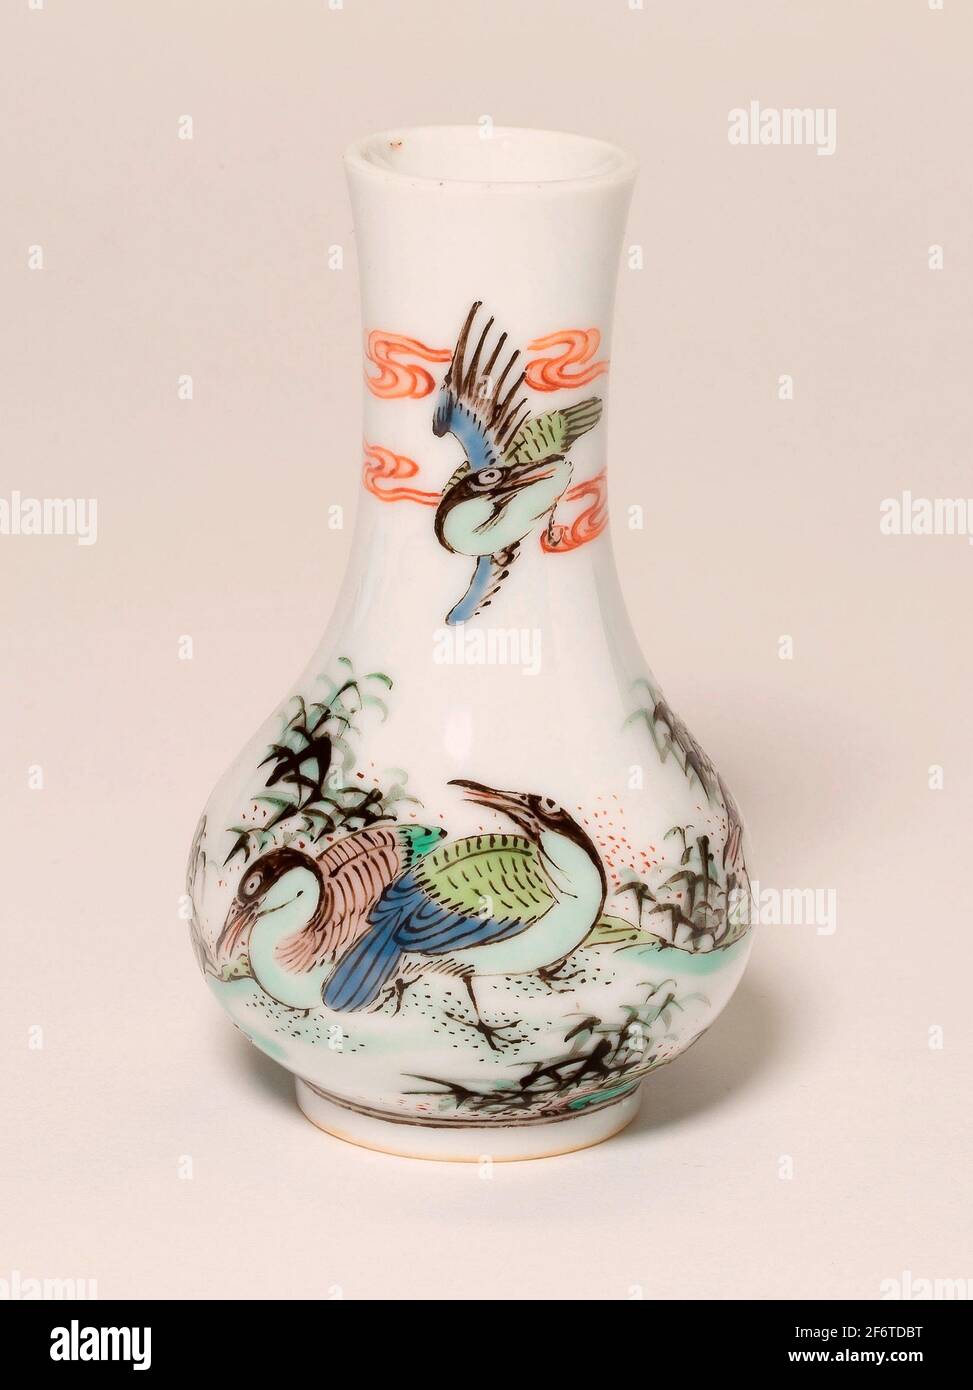 Vase miniature famille-verte 'Ducks' - dynastie Qing (1644'1911) - Chine. Porcelaine peinte en émail verni. Banque D'Images